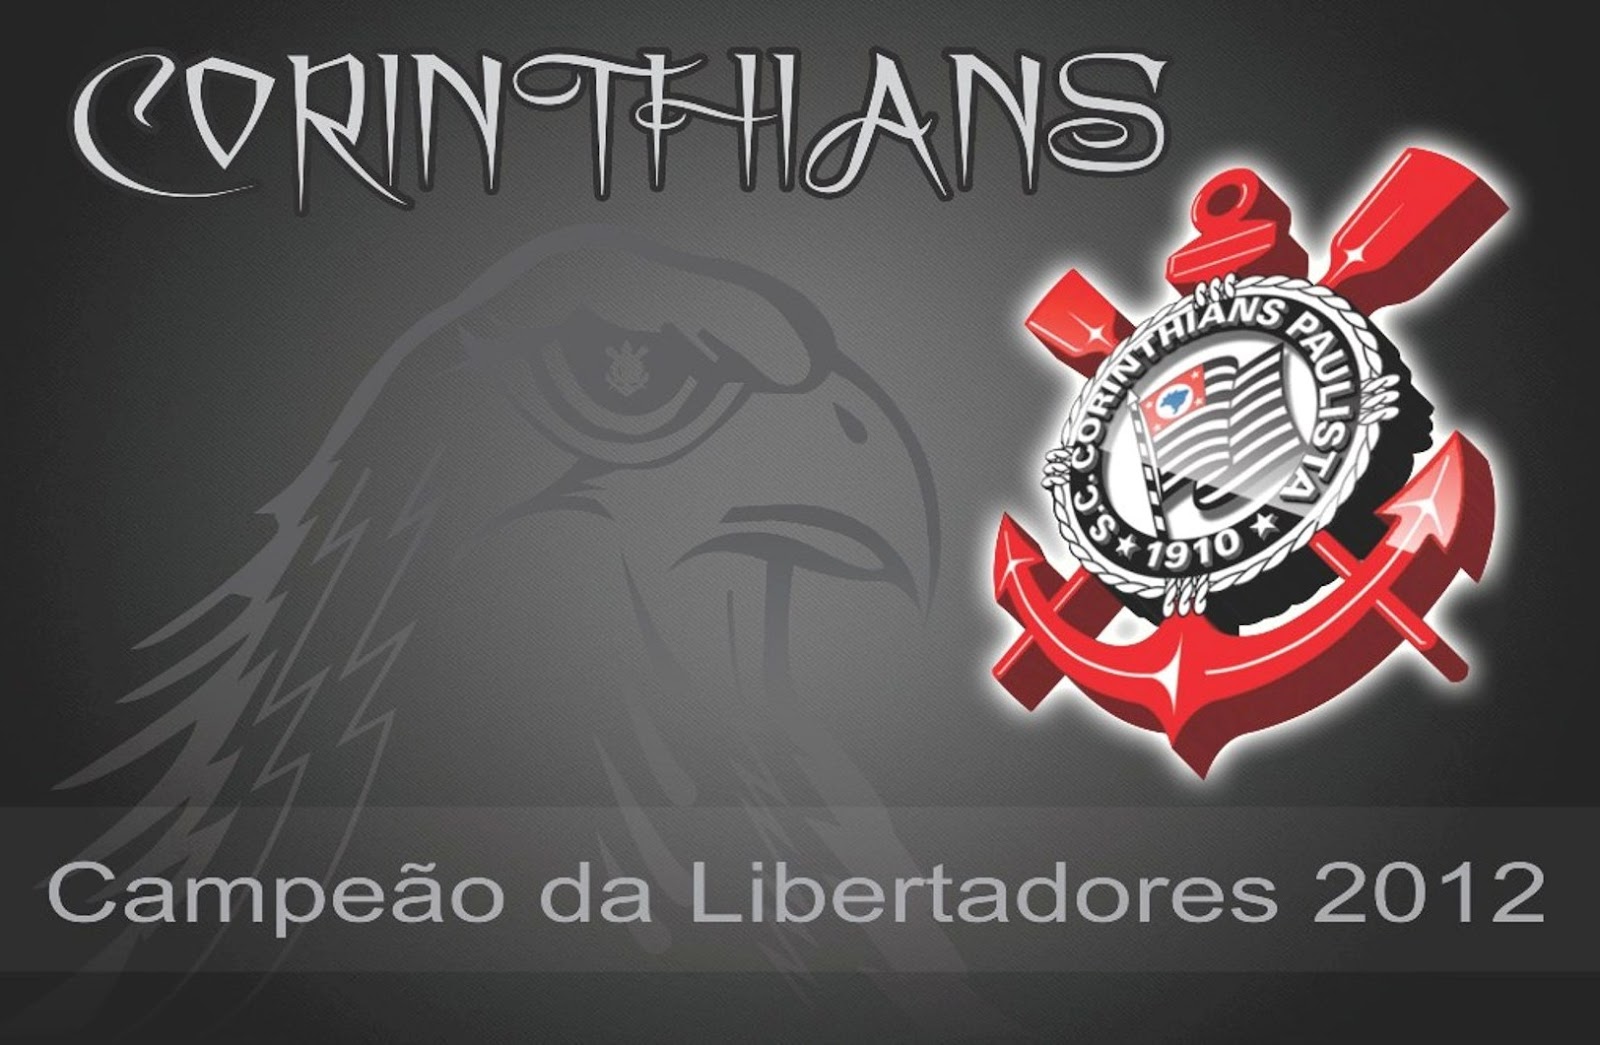 http://1.bp.blogspot.com/-dhZmLe9MXMw/T_YIbvfOSgI/AAAAAAAADKQ/seUSpNMktHw/s1600/Wallpaper+do+Corinthians+Campe%C3%A3o+da+Libertadores.jpg